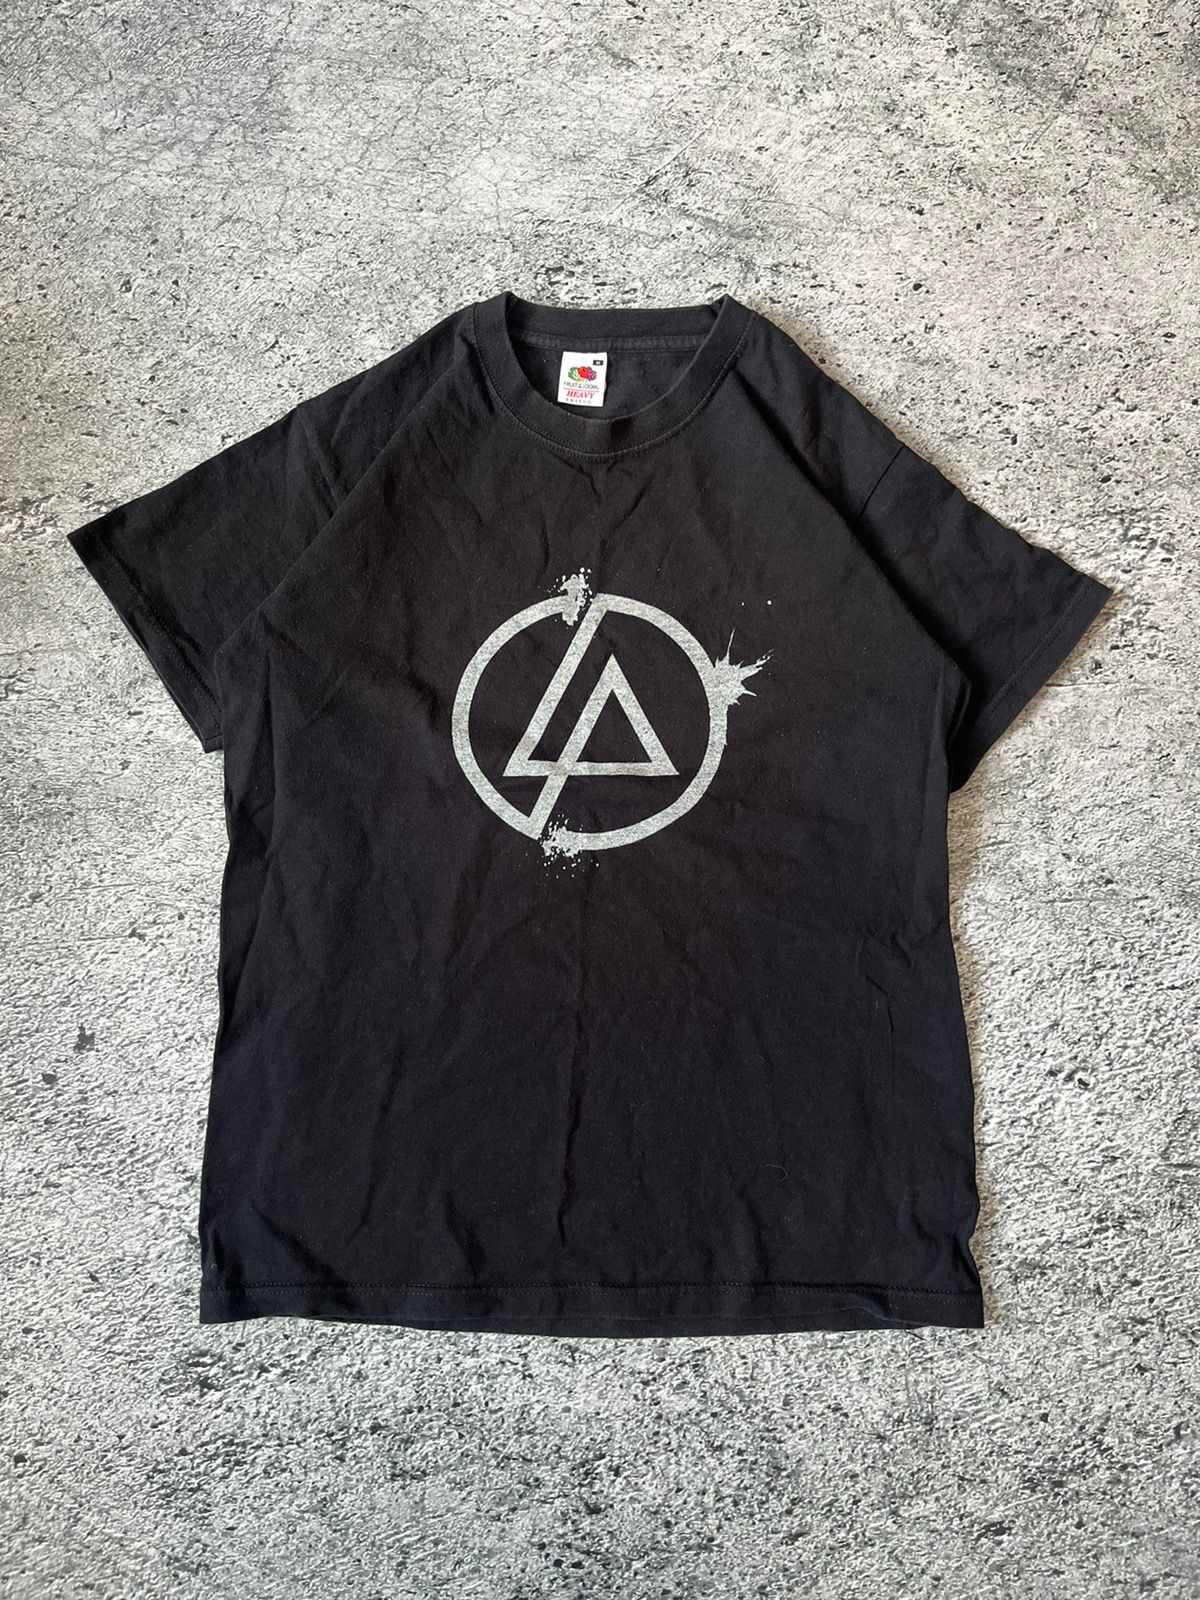 Vintage Vintage 2000 Linkin Park Promo Band T-Shirt Size US M / EU 48-50 / 2 - 1 Preview